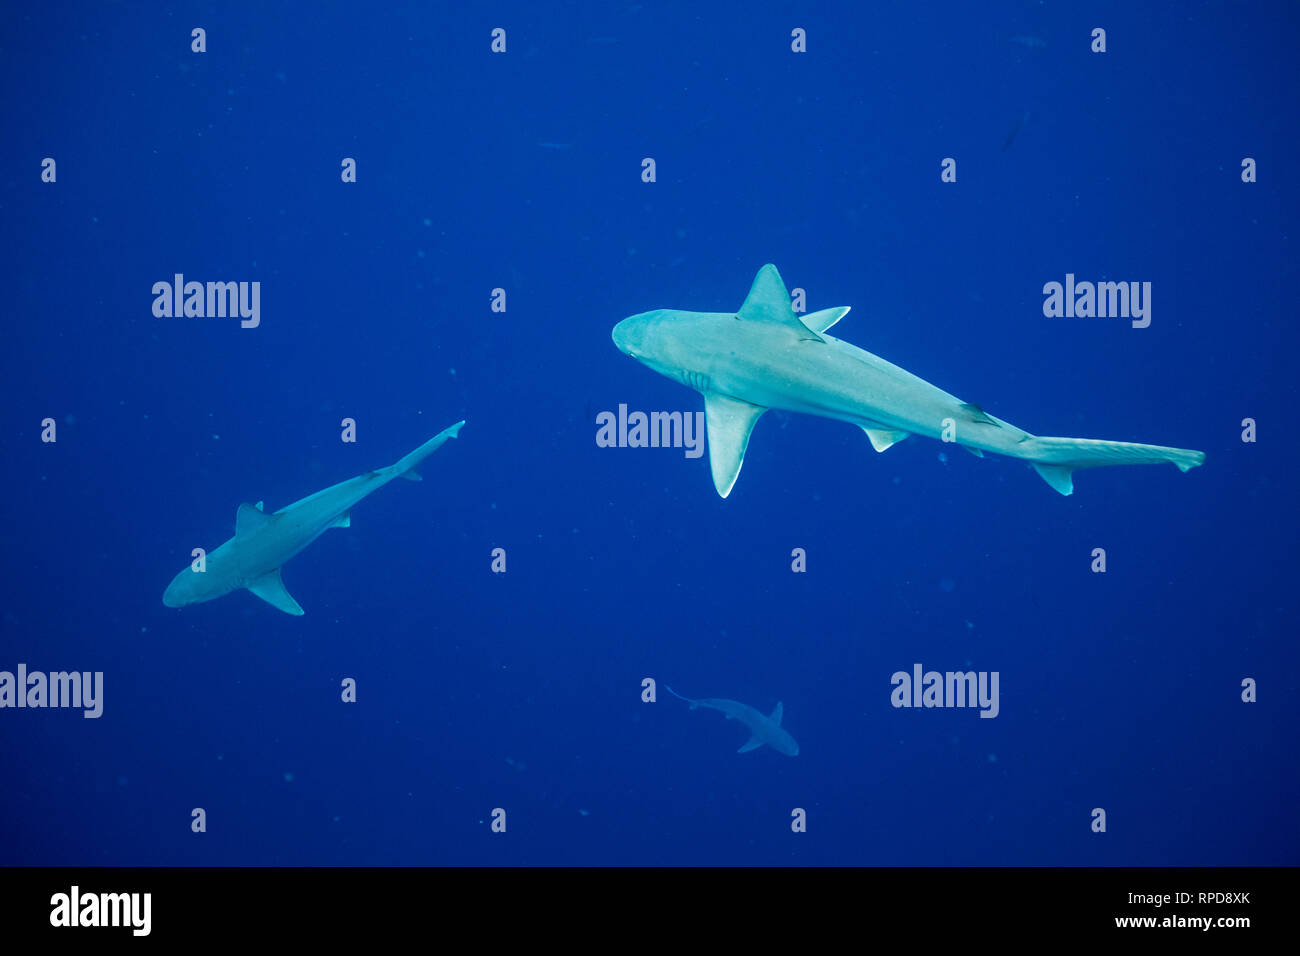 Sandbar shark hi-res stock photography and images - Alamy